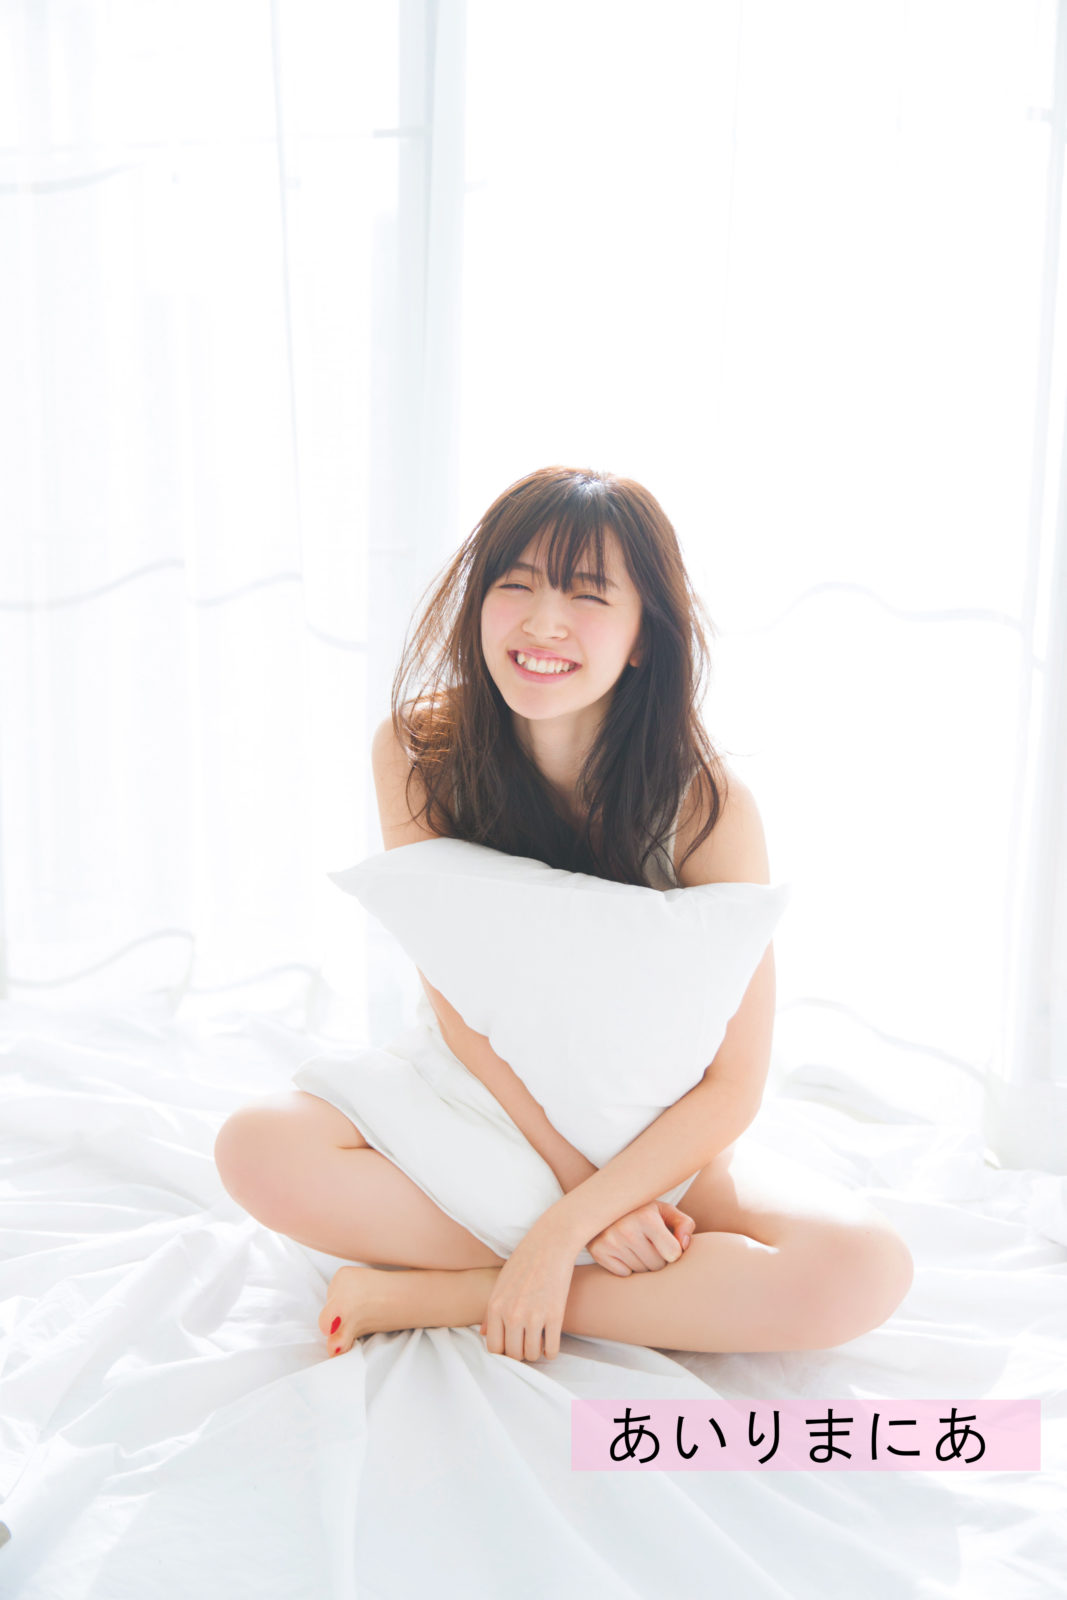 ℃-ute鈴木愛理、卒業間近に控え、白い肌見せドキッとショットを披露。メンバーと胸の内を語り合う企画の特別編集もサムネイル画像!